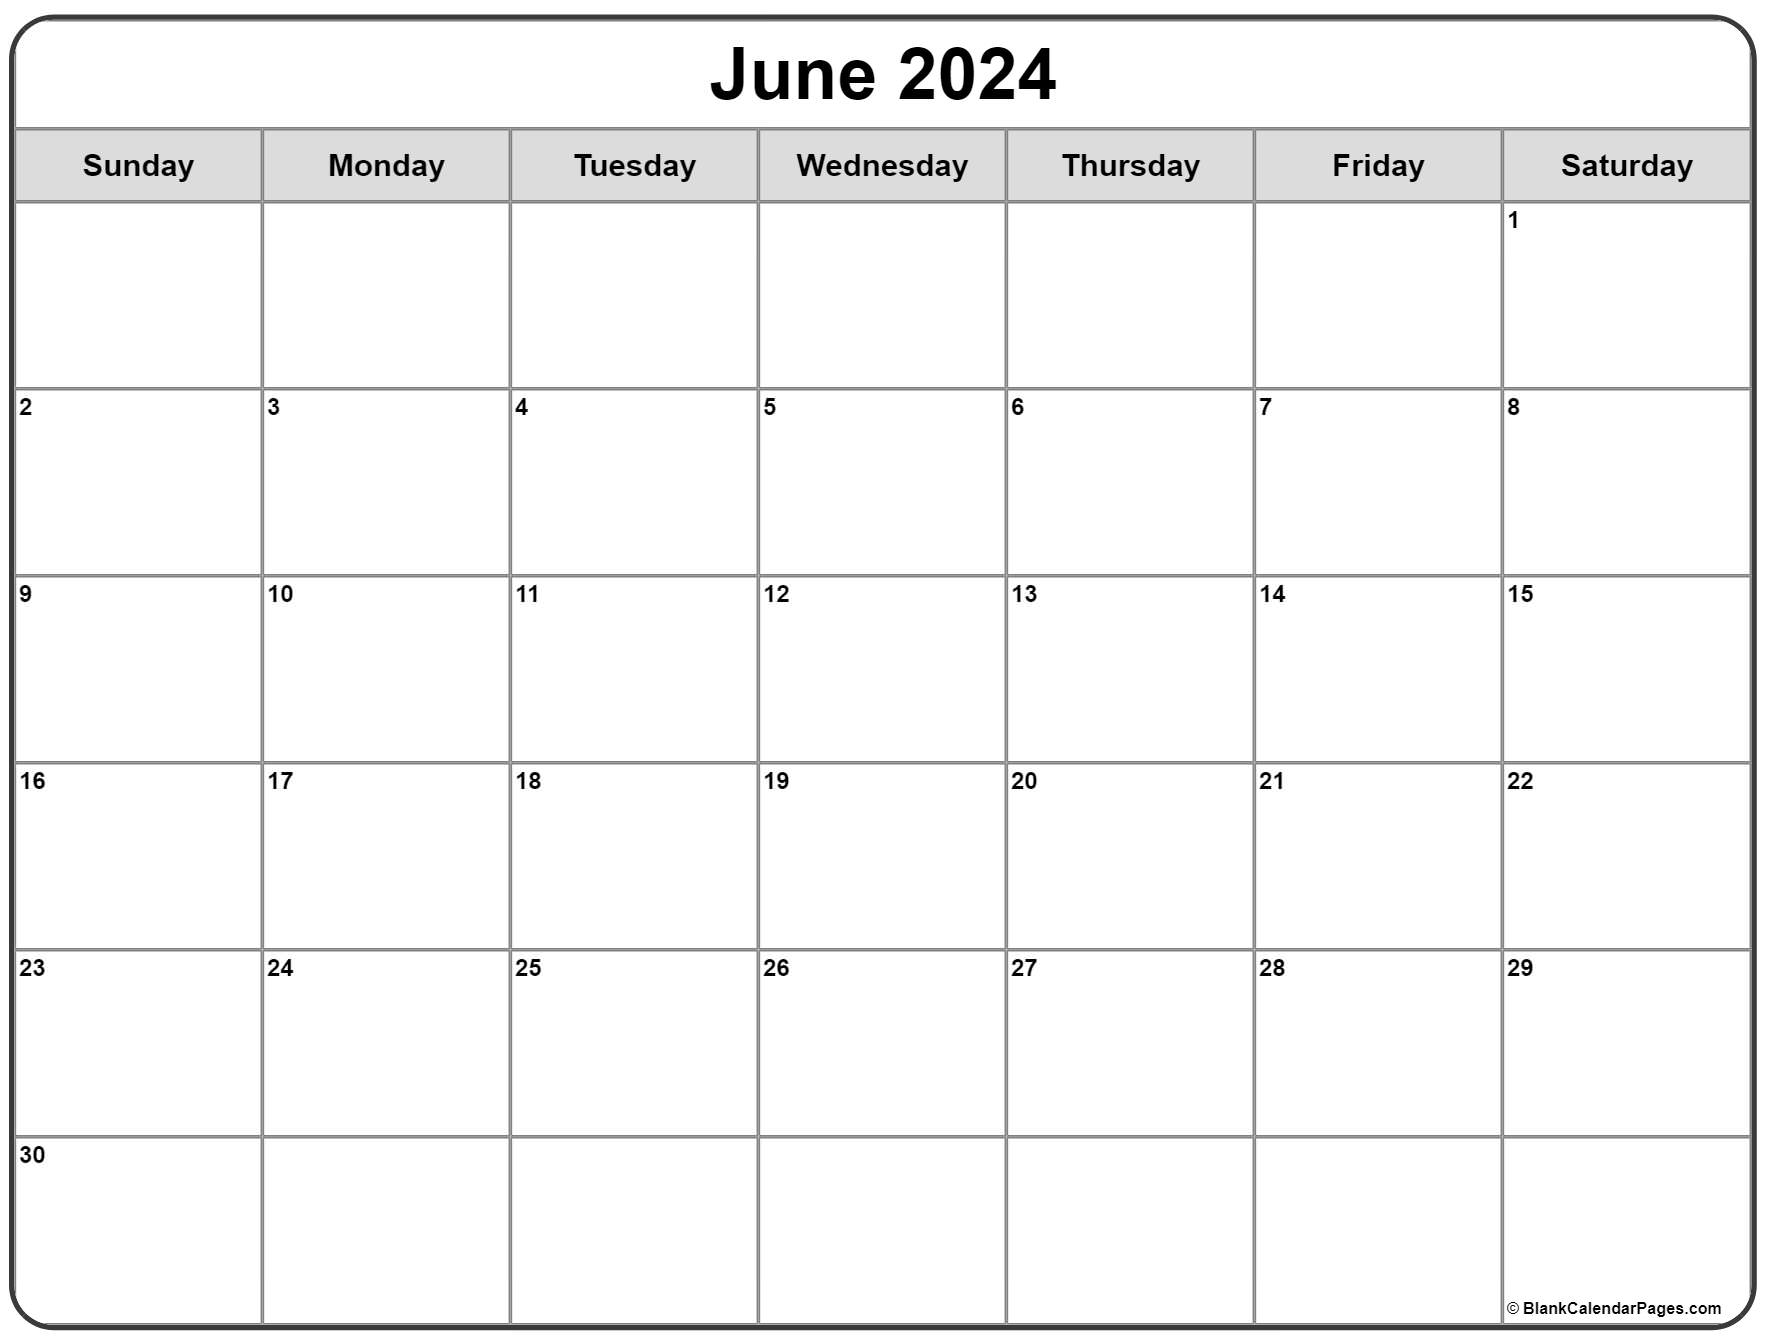 Календарь апрель май июнь 2024 года. Календарь 2024 по месяцам. Календарь на октябрь 2024 года. Календарь 2024 года по месяцам. Календарь на январь 2024 года.